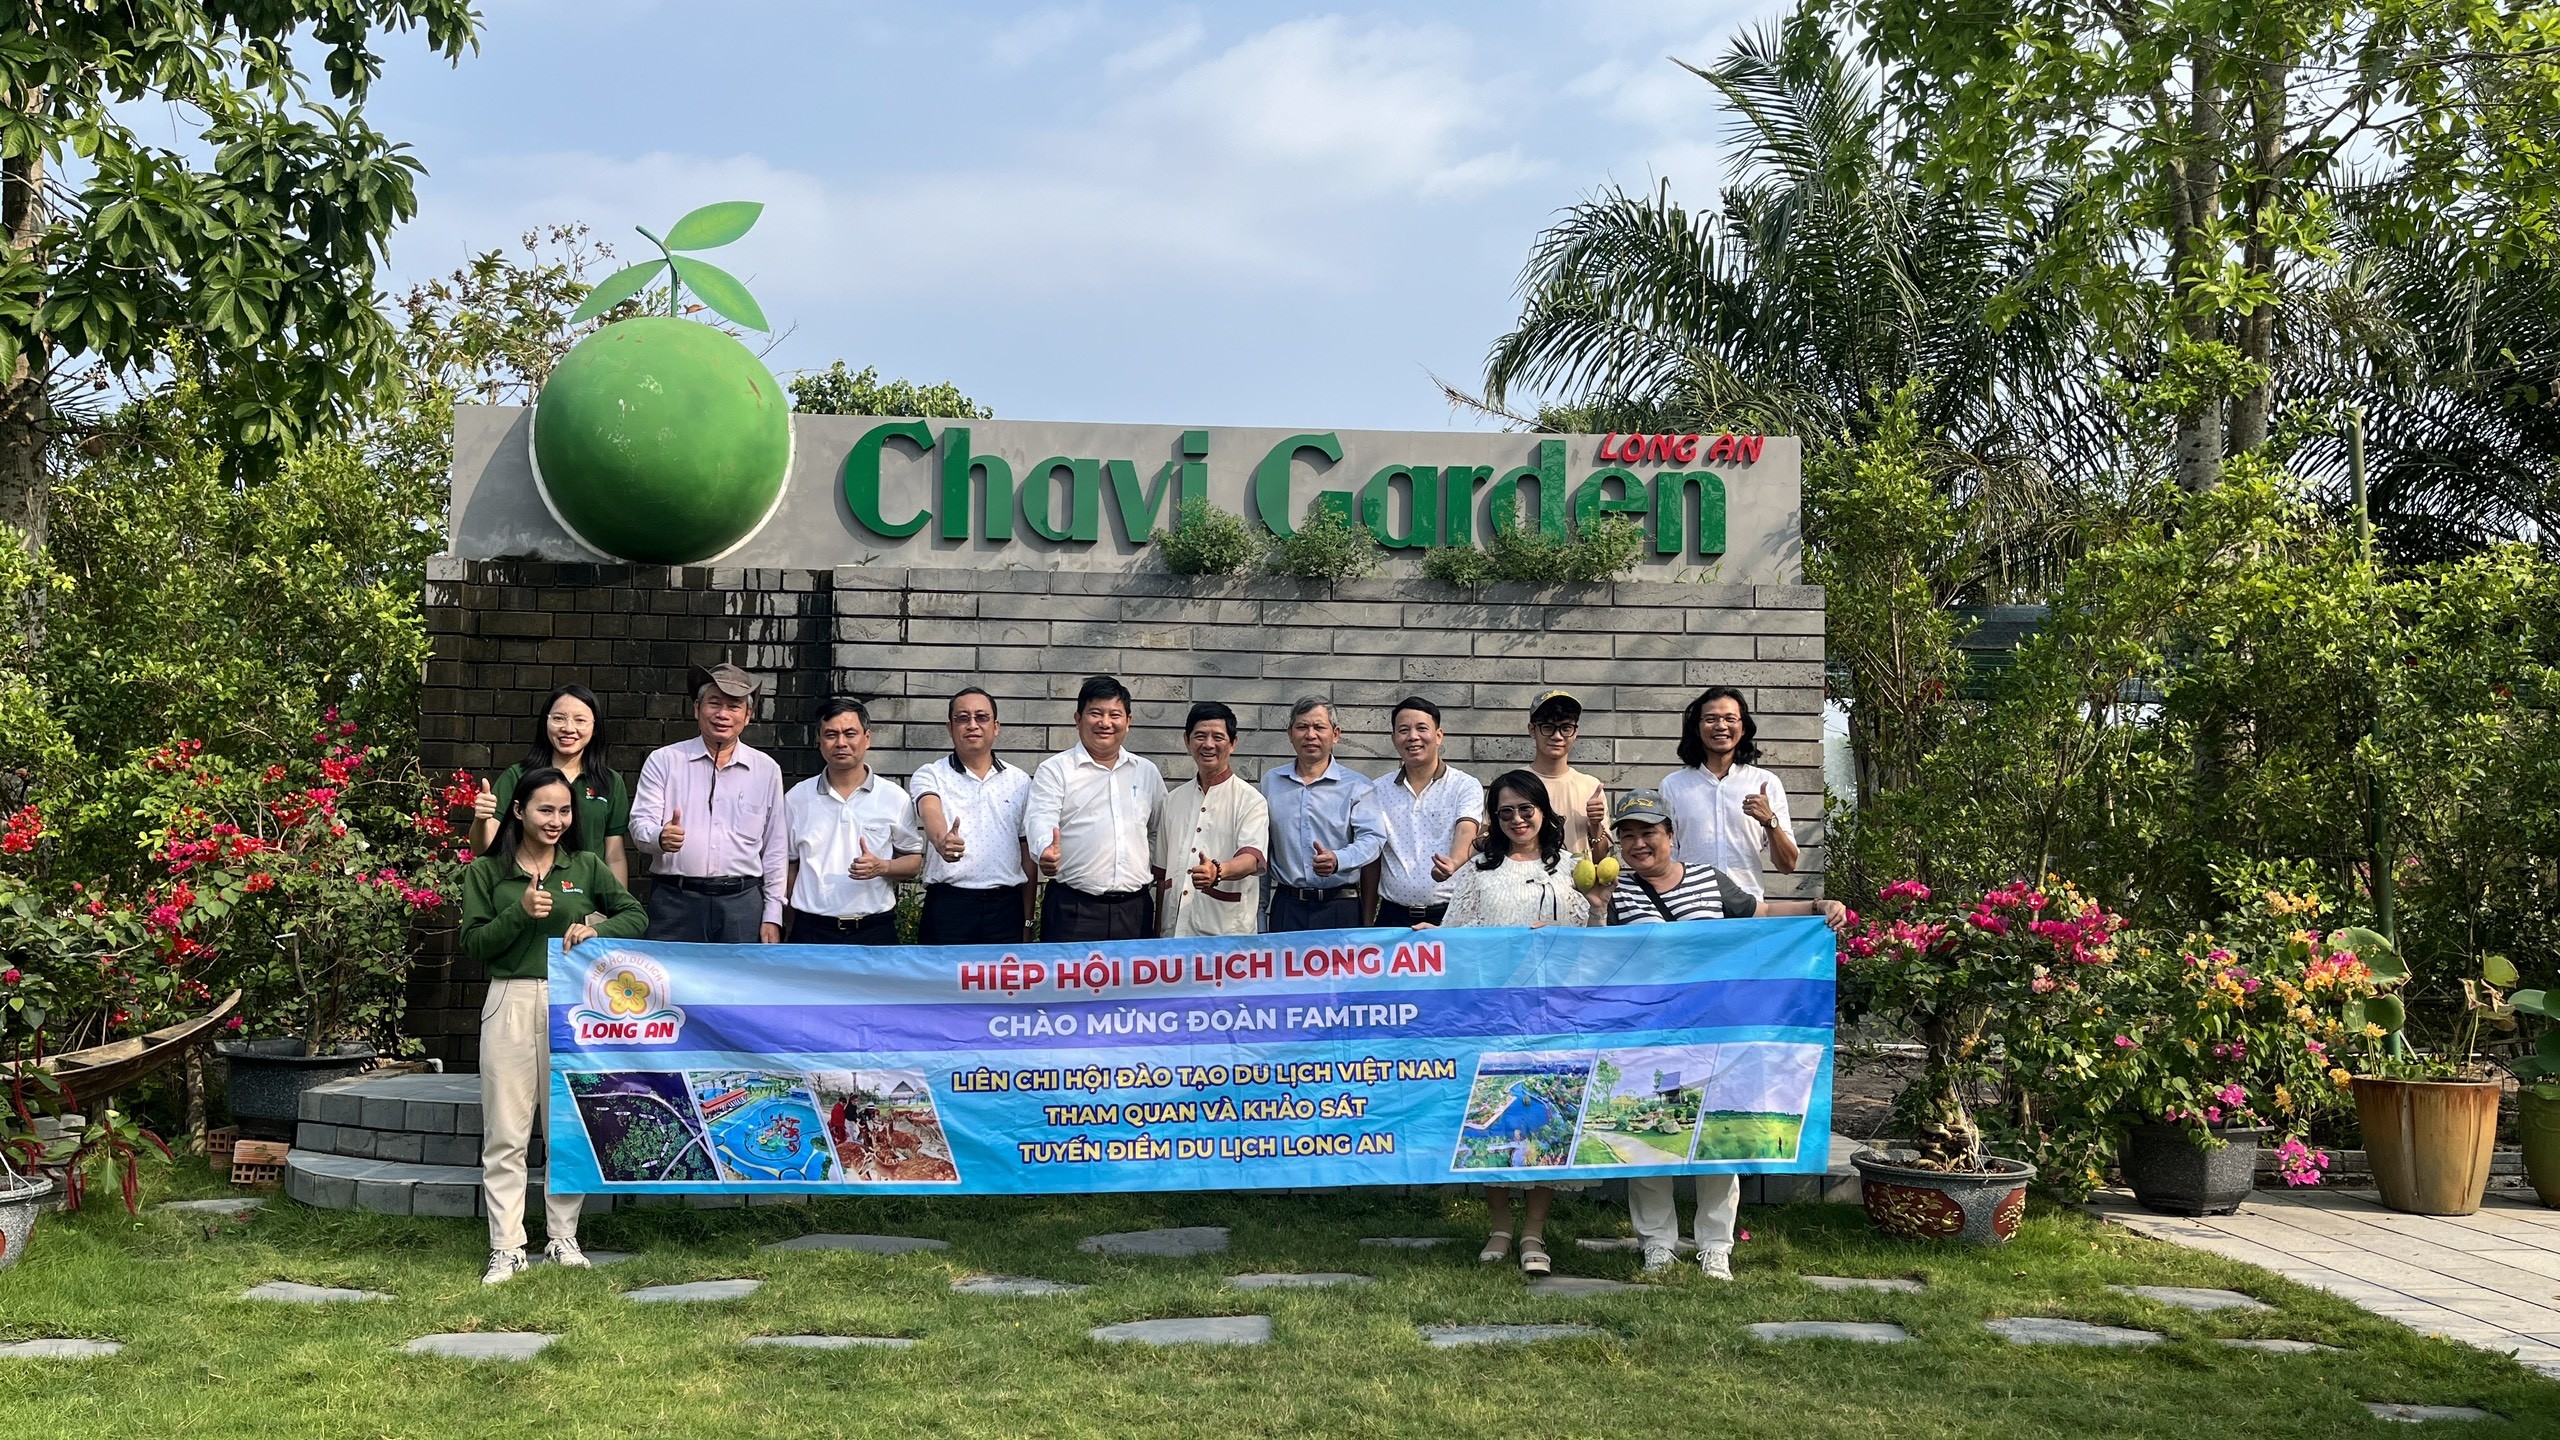 Liên chi hội Đào tạo Du lịch Việt Nam tham quan và khảo sát tuyến điểm du lịch tại Long An